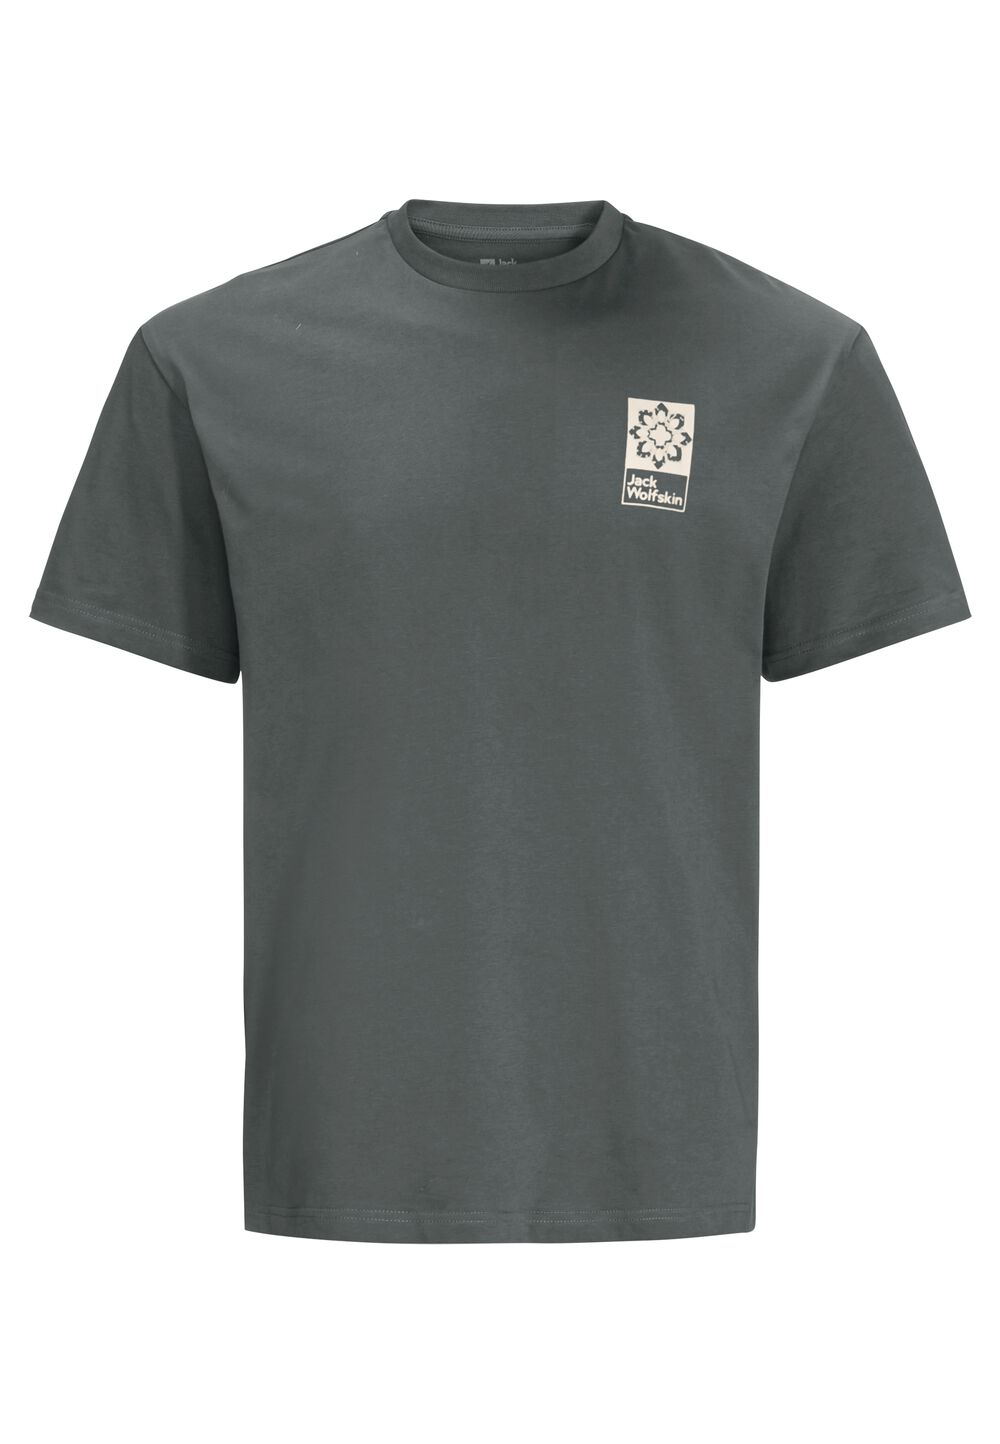 Jack Wolfskin Unisex T-shirt aus Bio-Baumwolle Eschenheimer Back T-Shirt S grau slate green von Jack Wolfskin